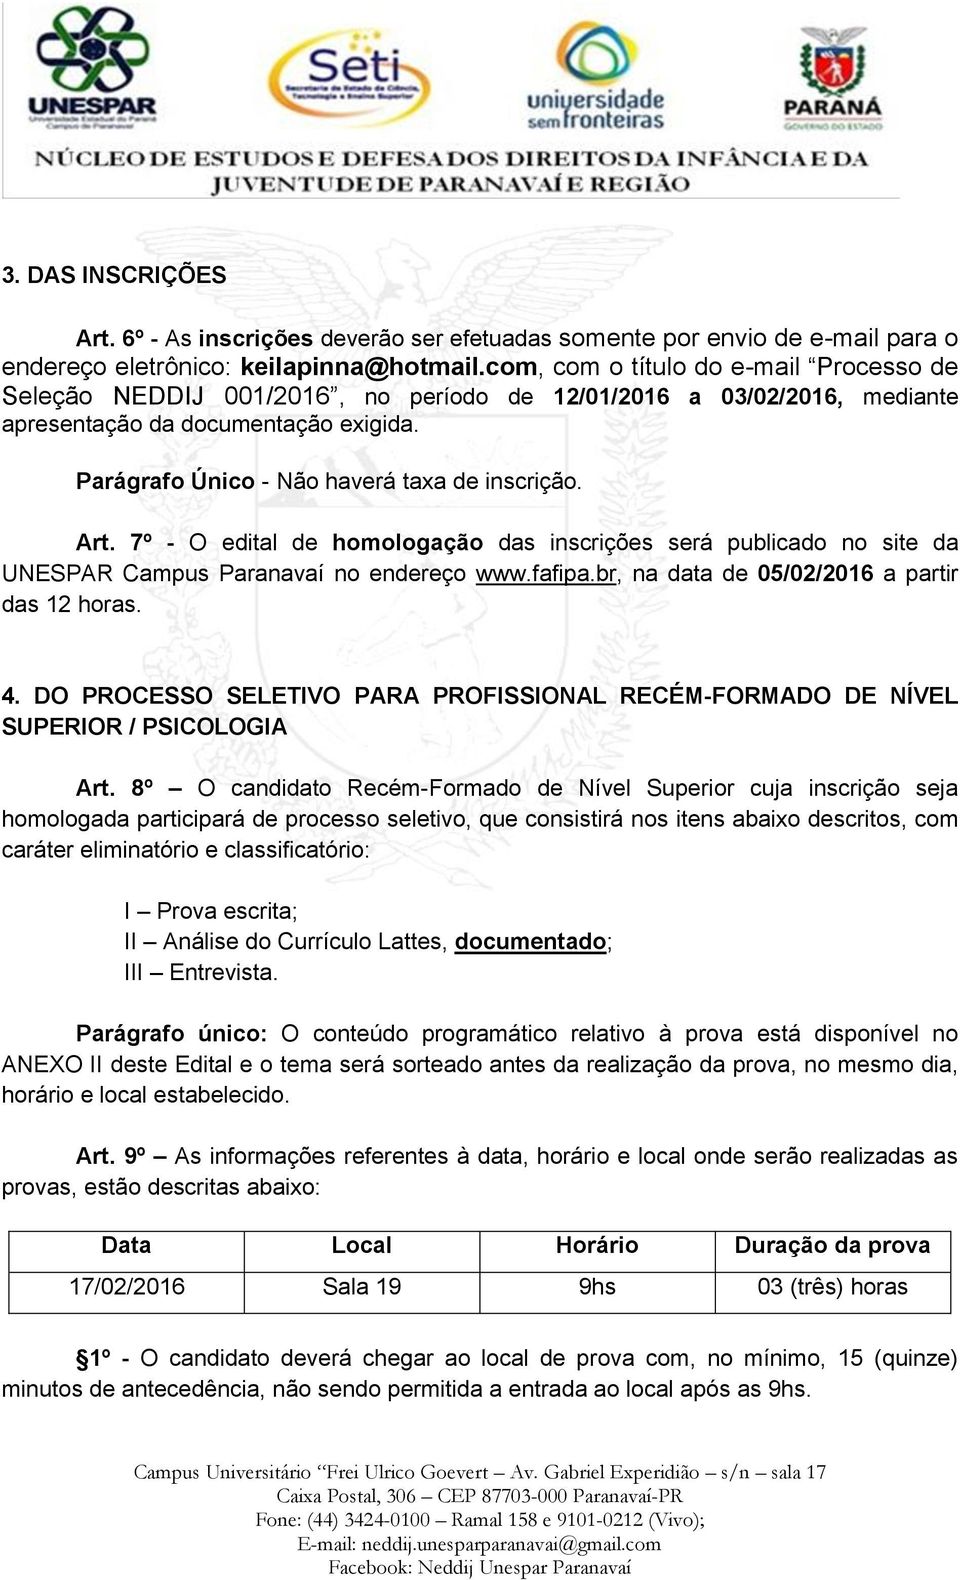 Art. 7º - O edital de homologação das inscrições será publicado no site da UNESPAR Campus Paranavaí no endereço www.fafipa.br, na data de 05/02/2016 a partir das 12 horas. 4.